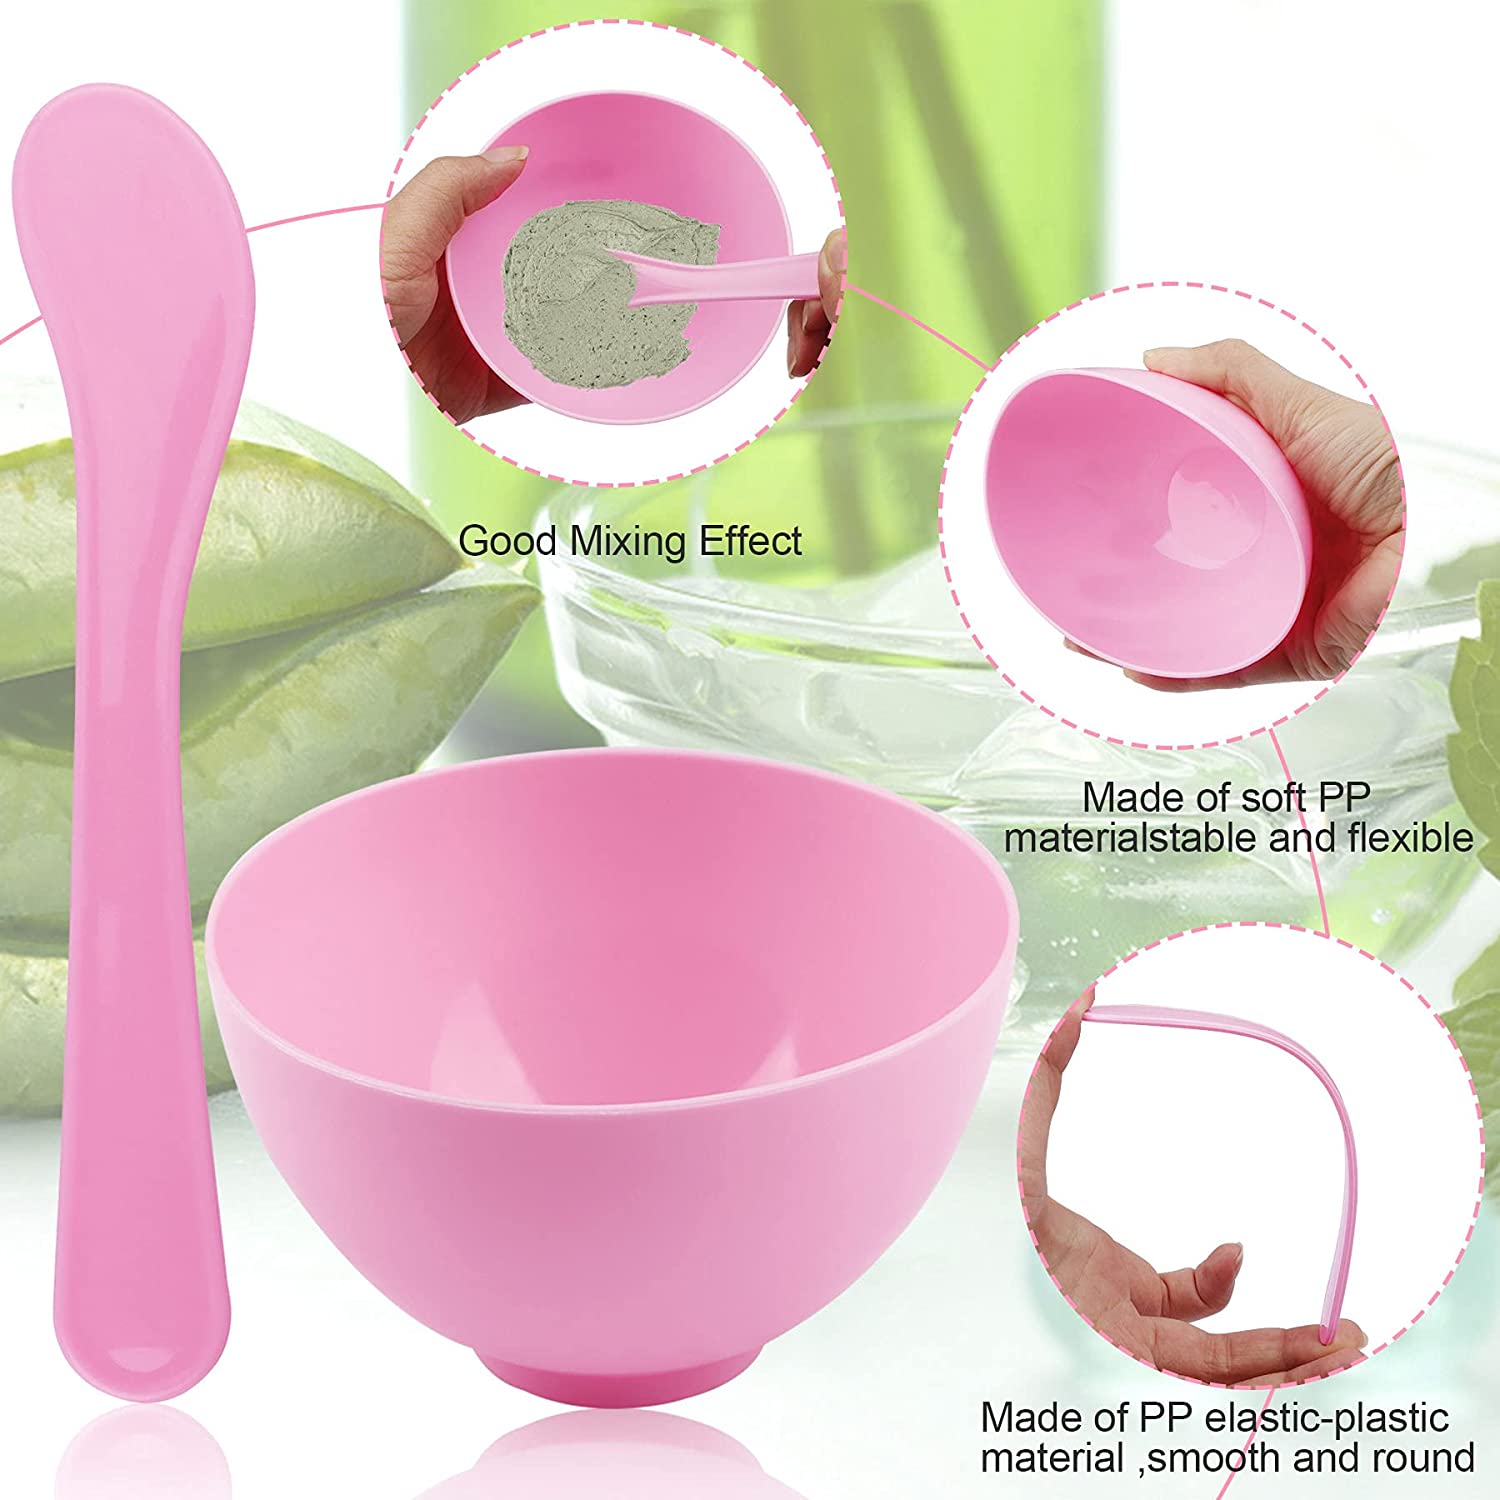 Mixing Bowl - Pink